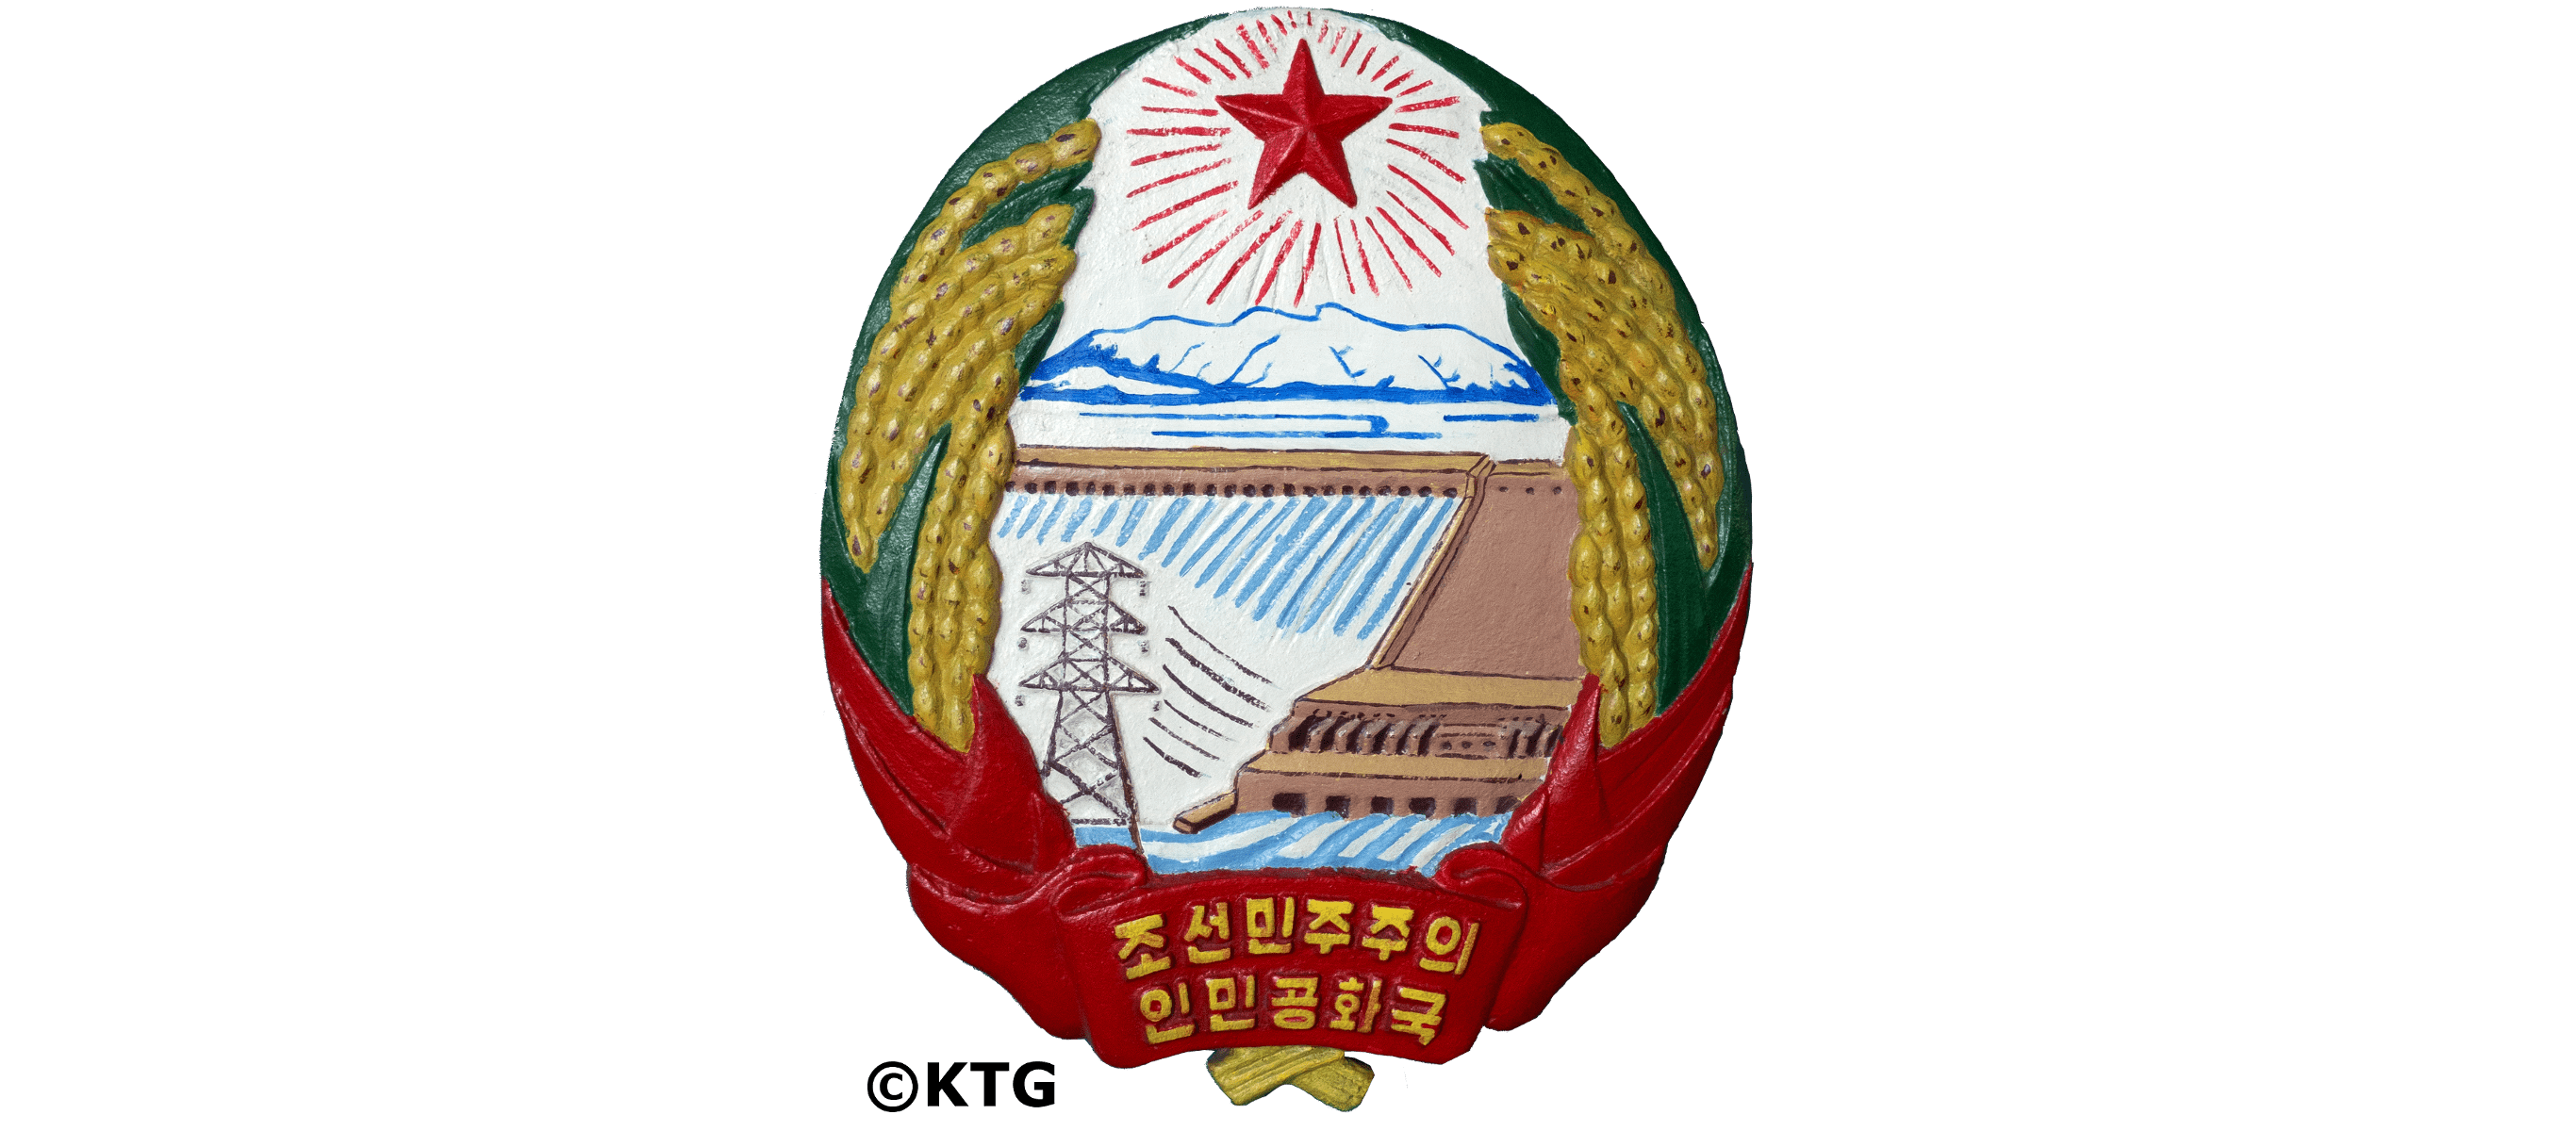 Emblema nacional de Corea del Norte (la República Popular Democrática de Corea). Foto del emblema de Corea del Norte sacada por KTG